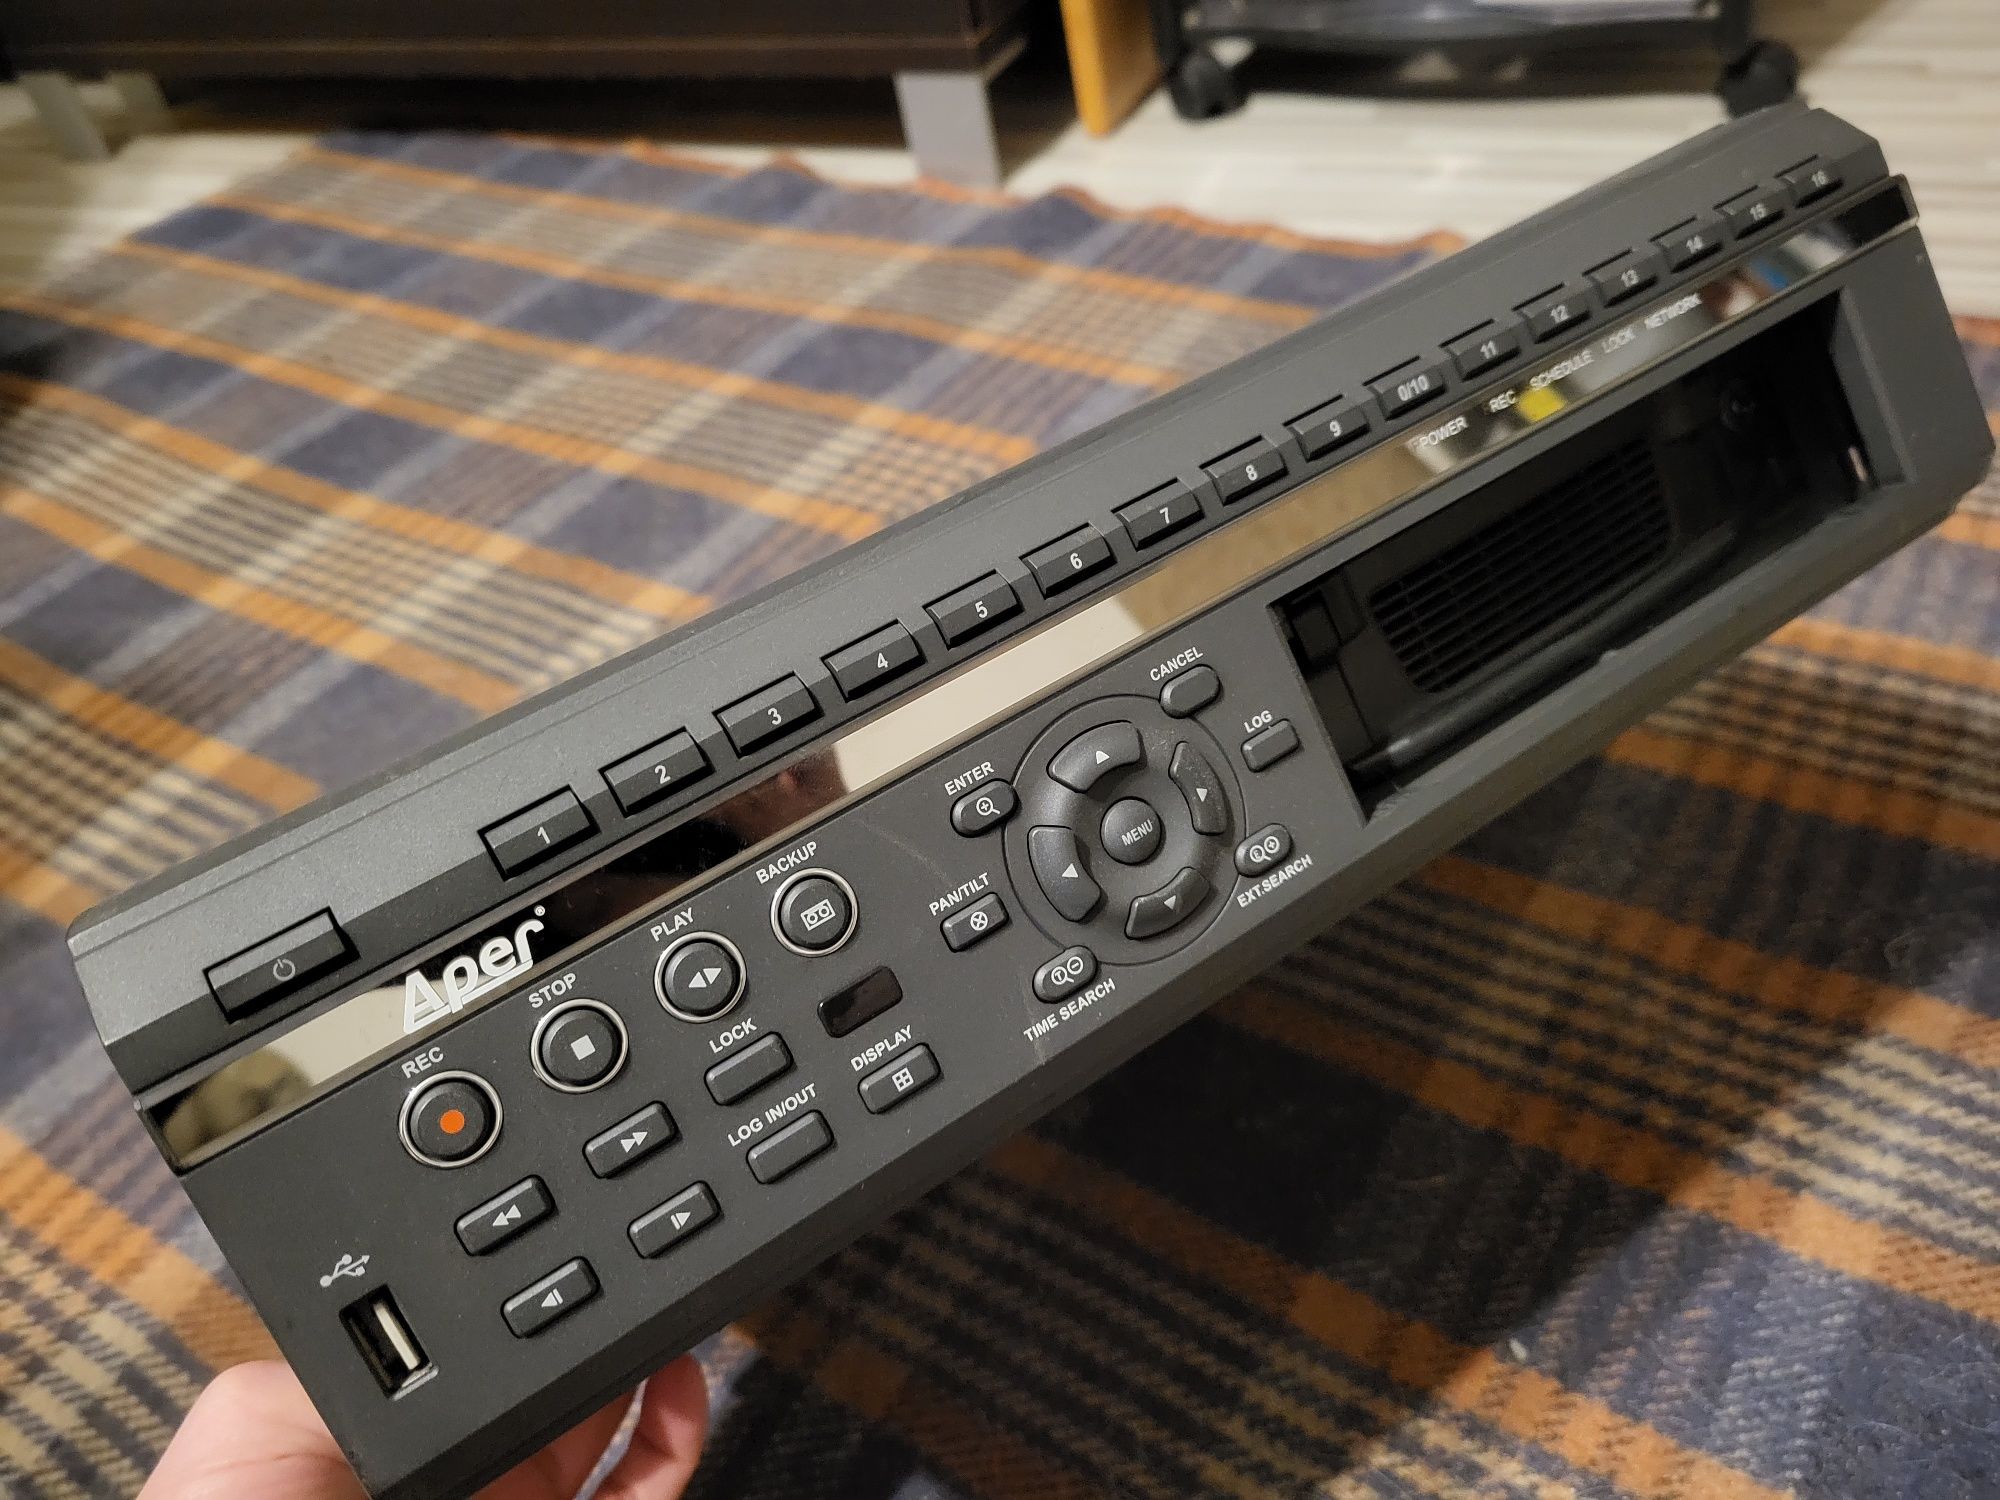 Aper PDR-M6016 Cyfrowy rejestrator przemysłowy 16 kanałów 400kl/s